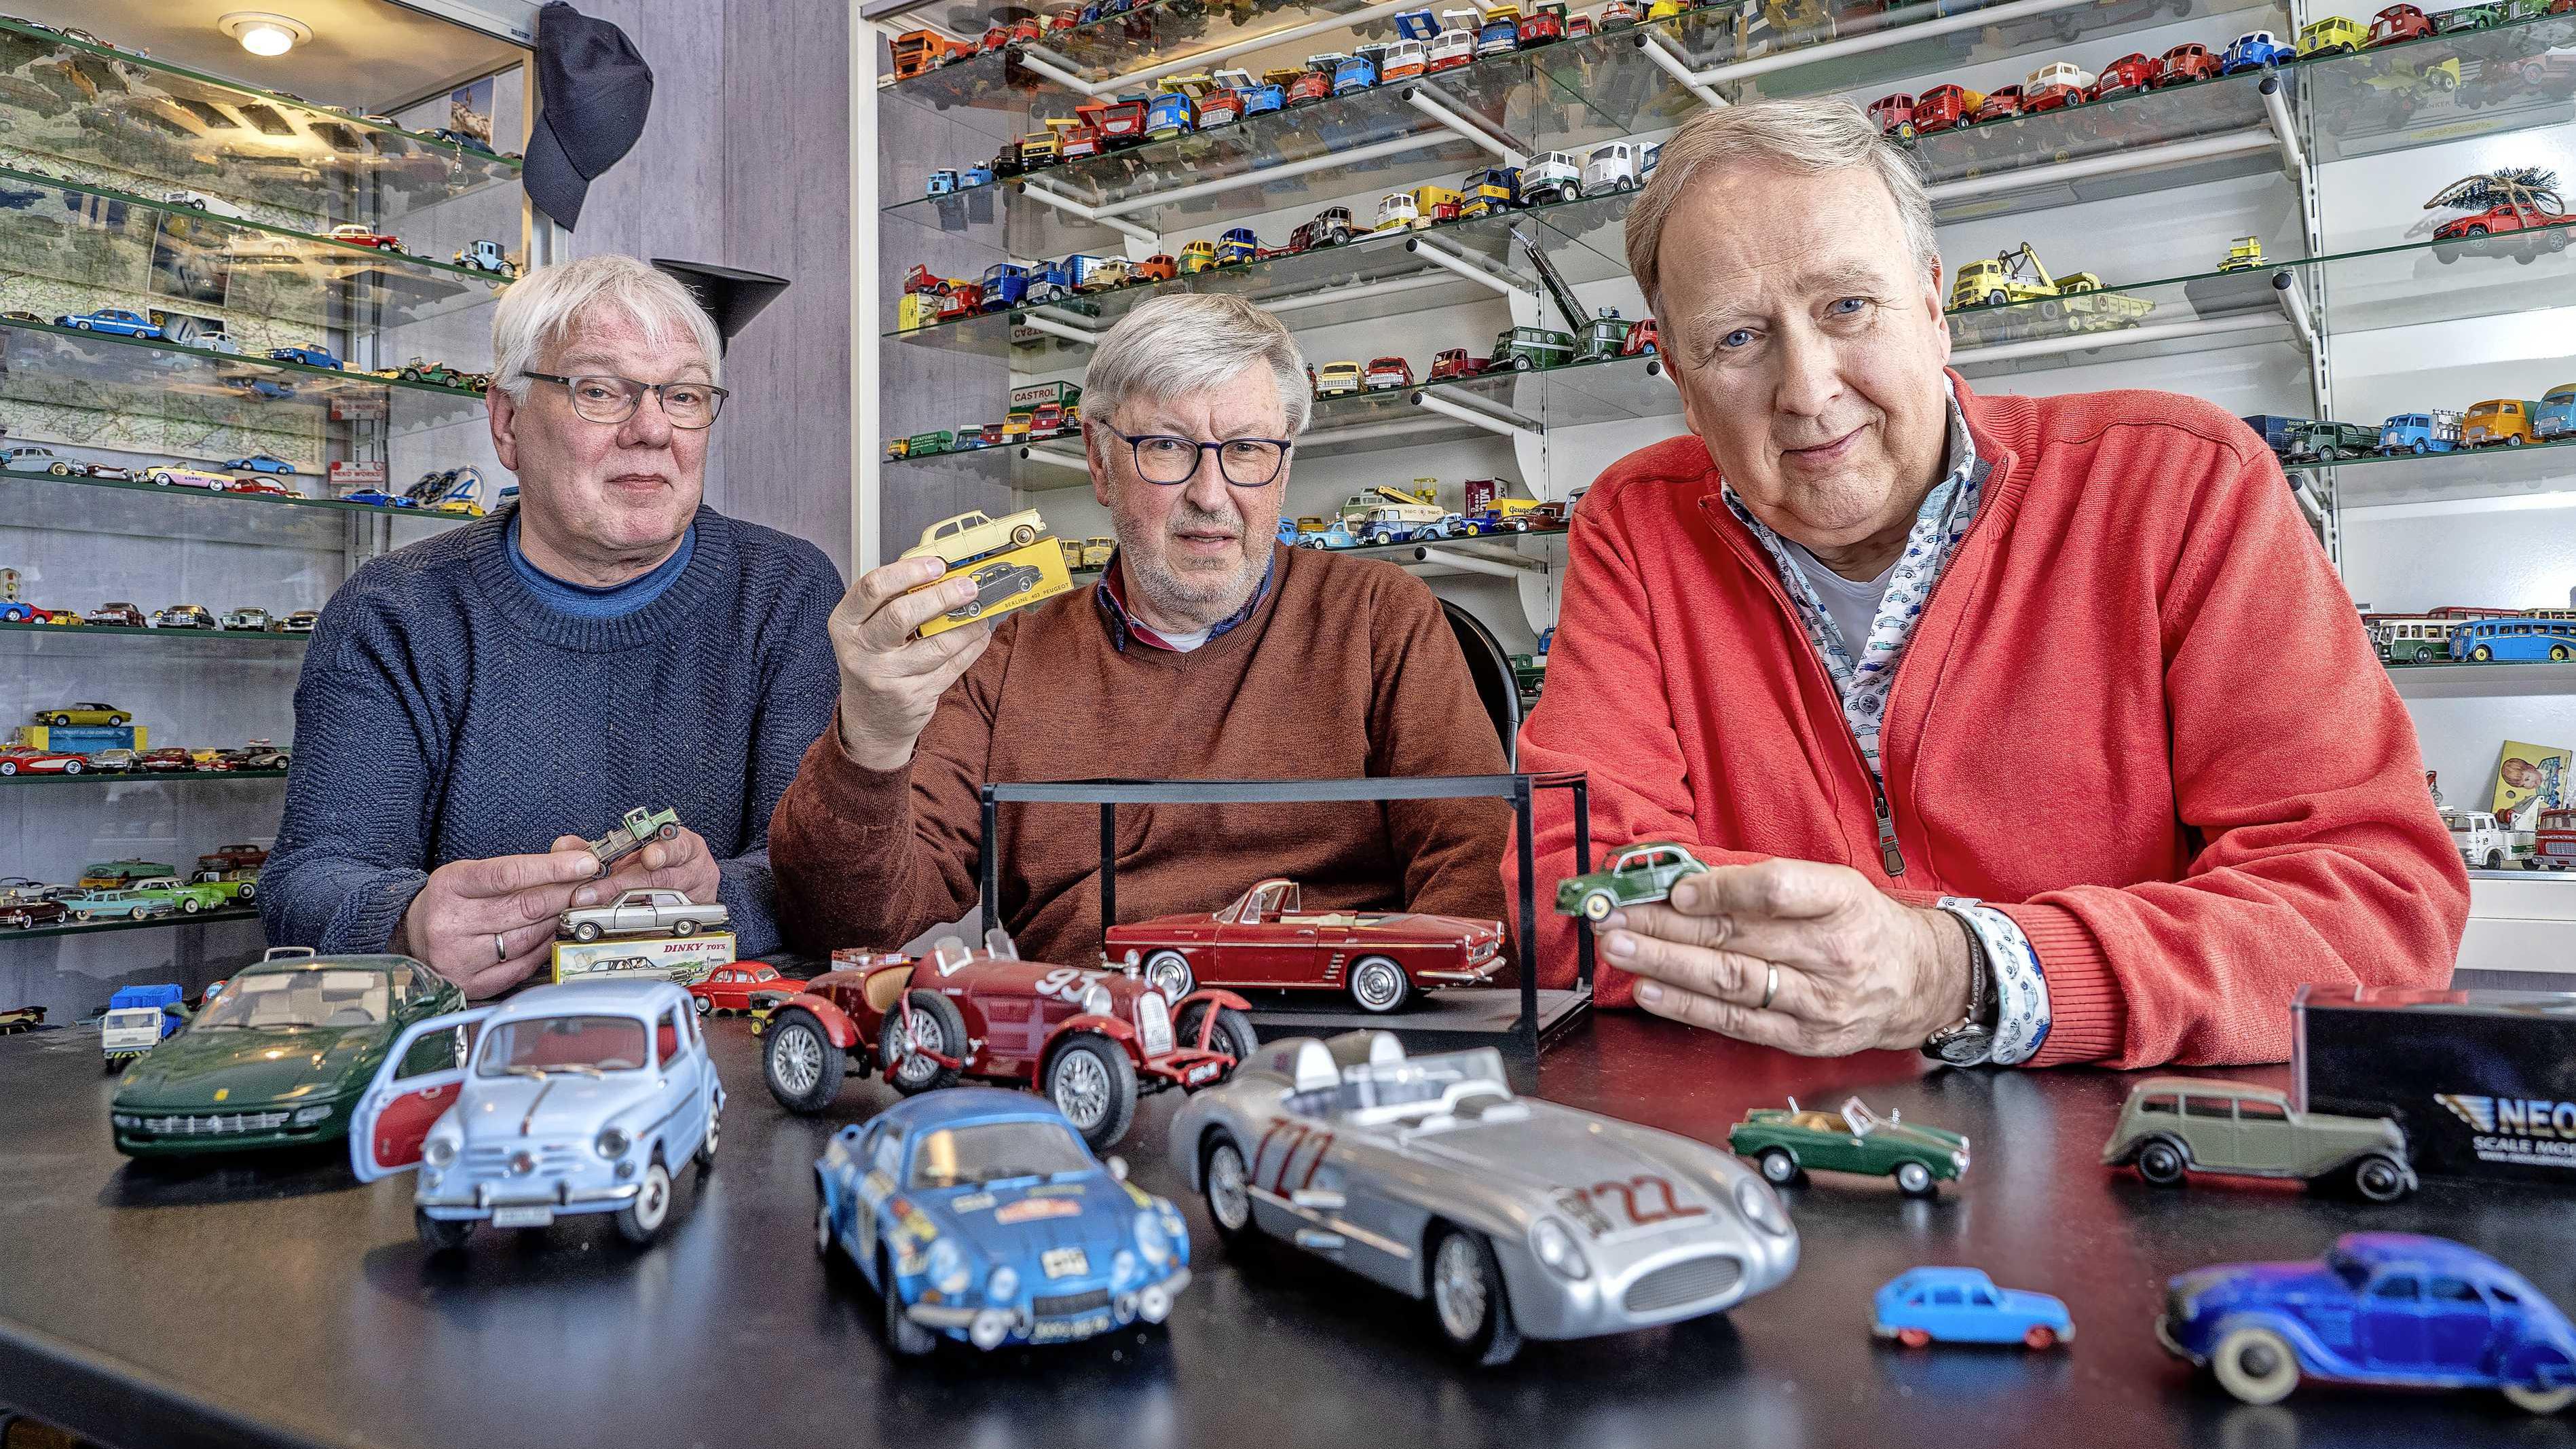 opgraven Kikker school Kleine auto's grote hobby: een kijkje in de wereld van de modelauto | Thuis  & Tuin | Telegraaf.nl